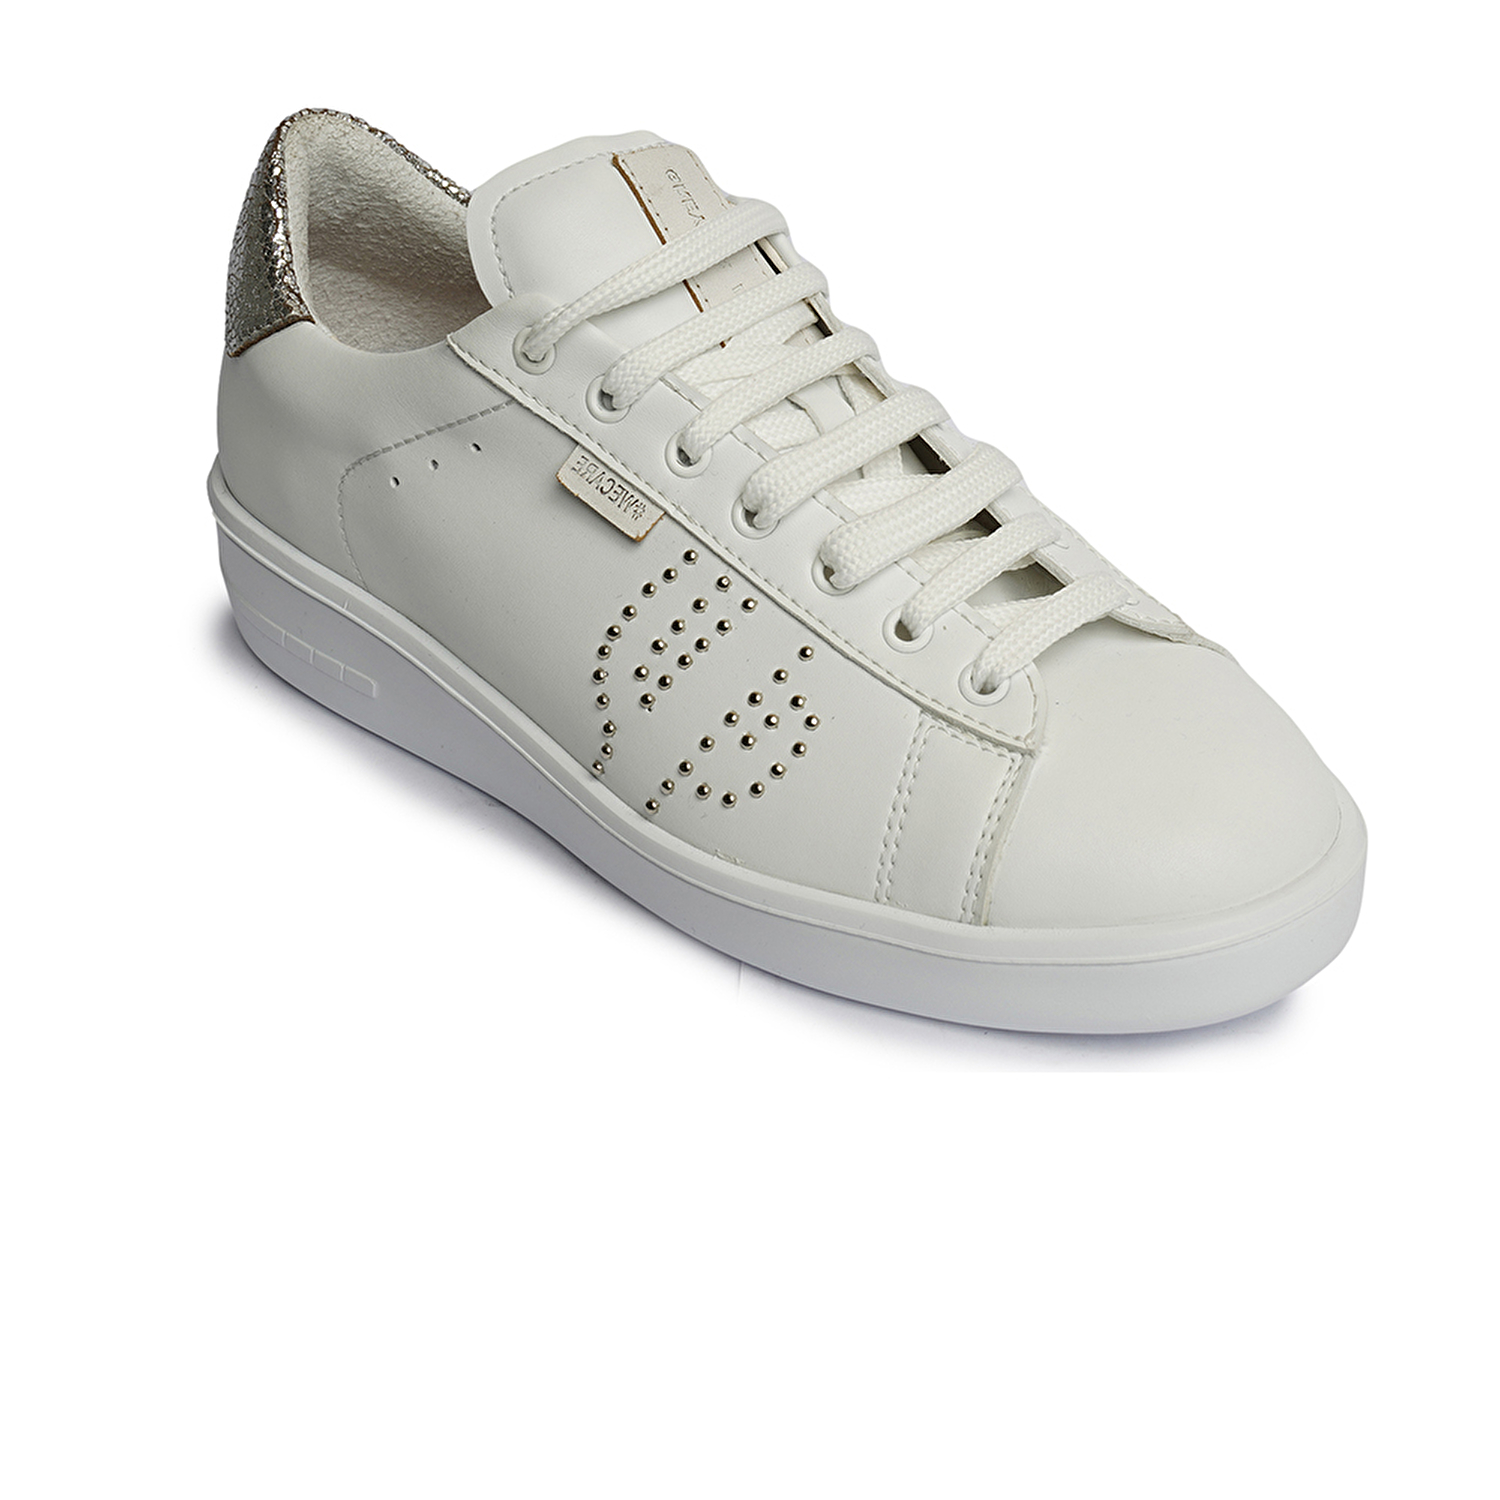 Kadın Gümüş Hakiki Deri Sneaker Ayakkabı 4Y2SA45200-1